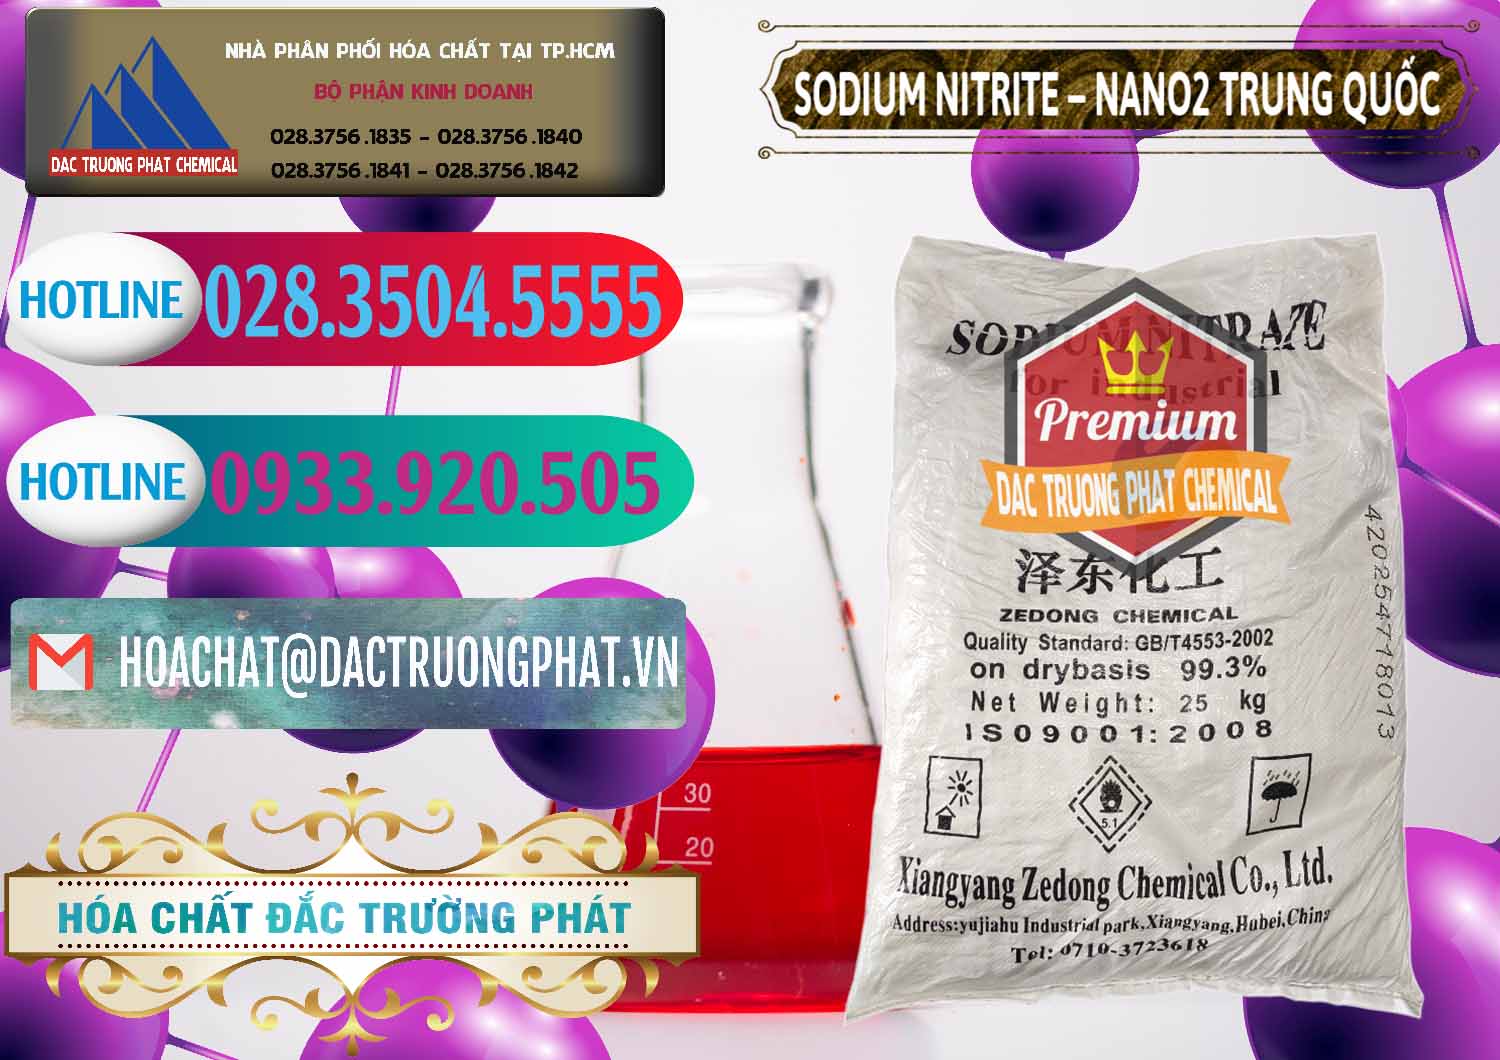 Cty chuyên nhập khẩu ( bán ) Sodium Nitrite - NANO2 Zedong Trung Quốc China - 0149 - Đơn vị cung cấp _ phân phối hóa chất tại TP.HCM - truongphat.vn